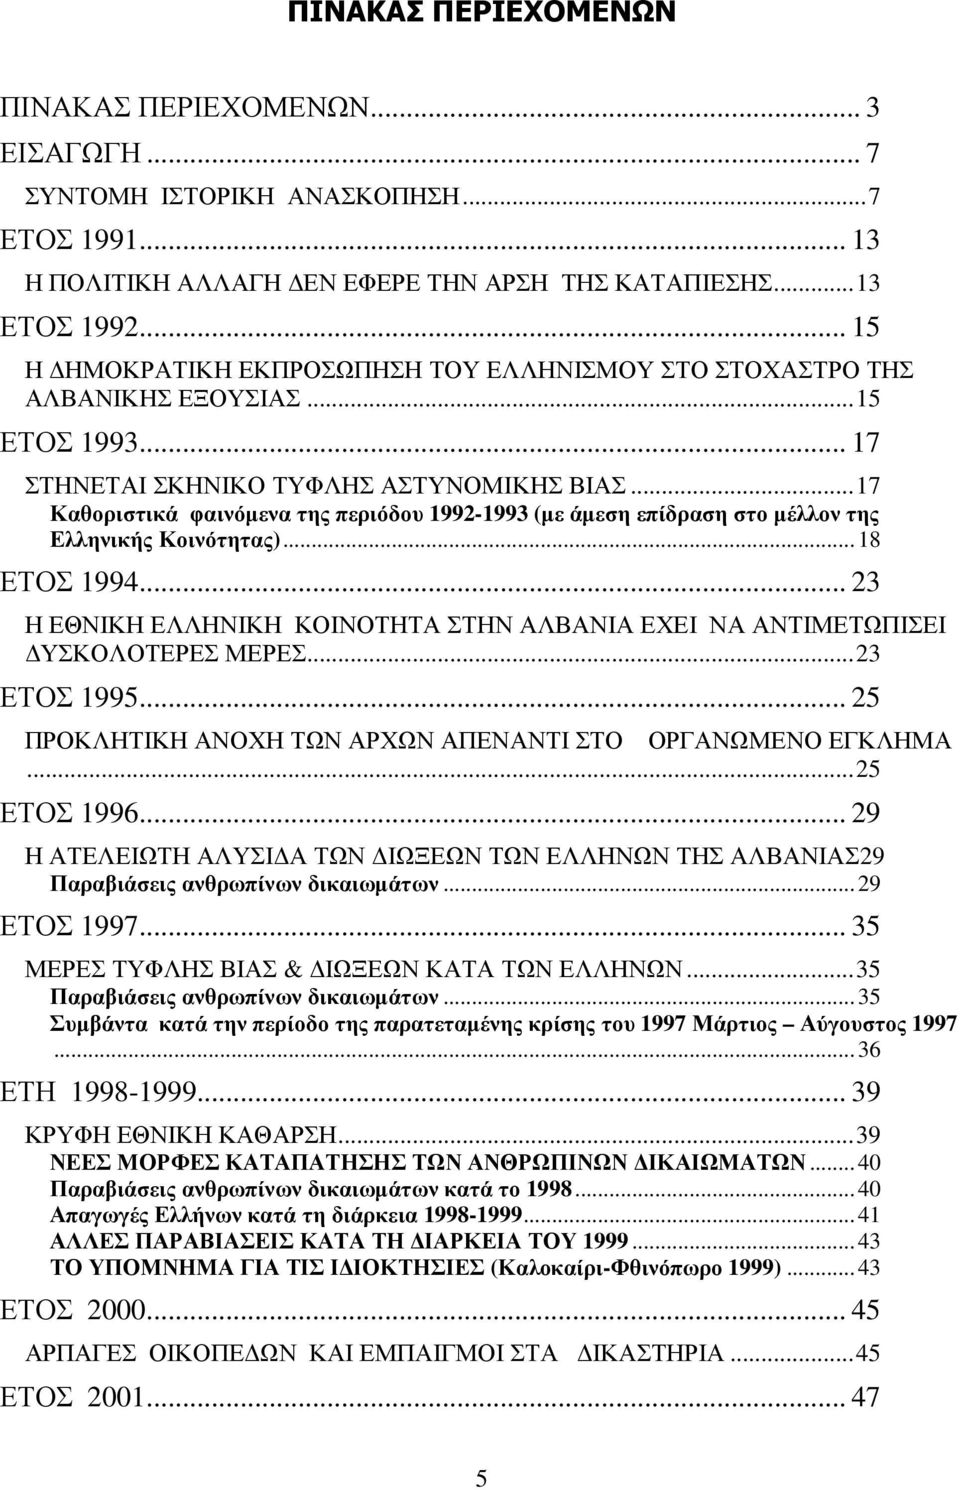 ..17 Καθοριστικά φαινόµενα της περιόδου 1992-1993 (µε άµεση επίδραση στο µέλλον της Ελληνικής Κοινότητας)...18 ΕΤΟΣ 1994.